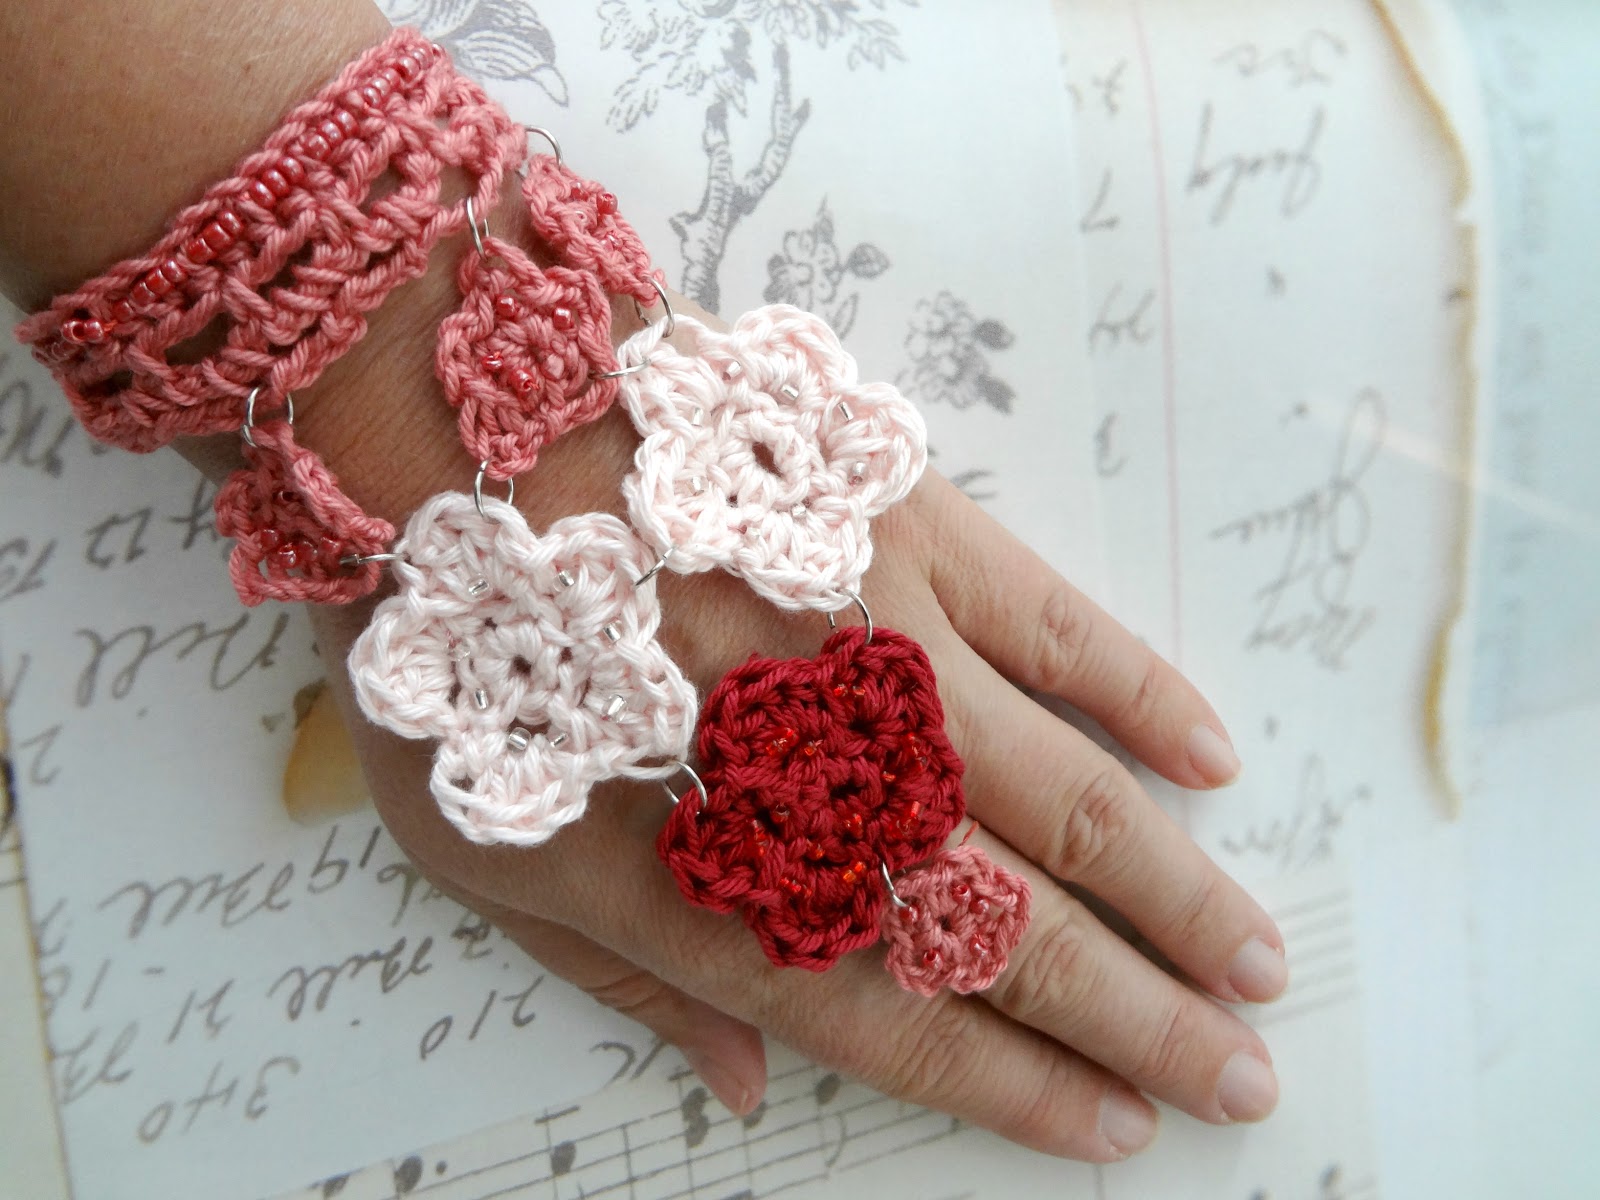 Micro Crochet Daisy and Sunflower Jewellery Pattern, Crochet Flower Making  Tutorial, Crochet PDF Pattern Digital Download - Etsy | Jewelry patterns,  Crochet daisy, Crochet flowers